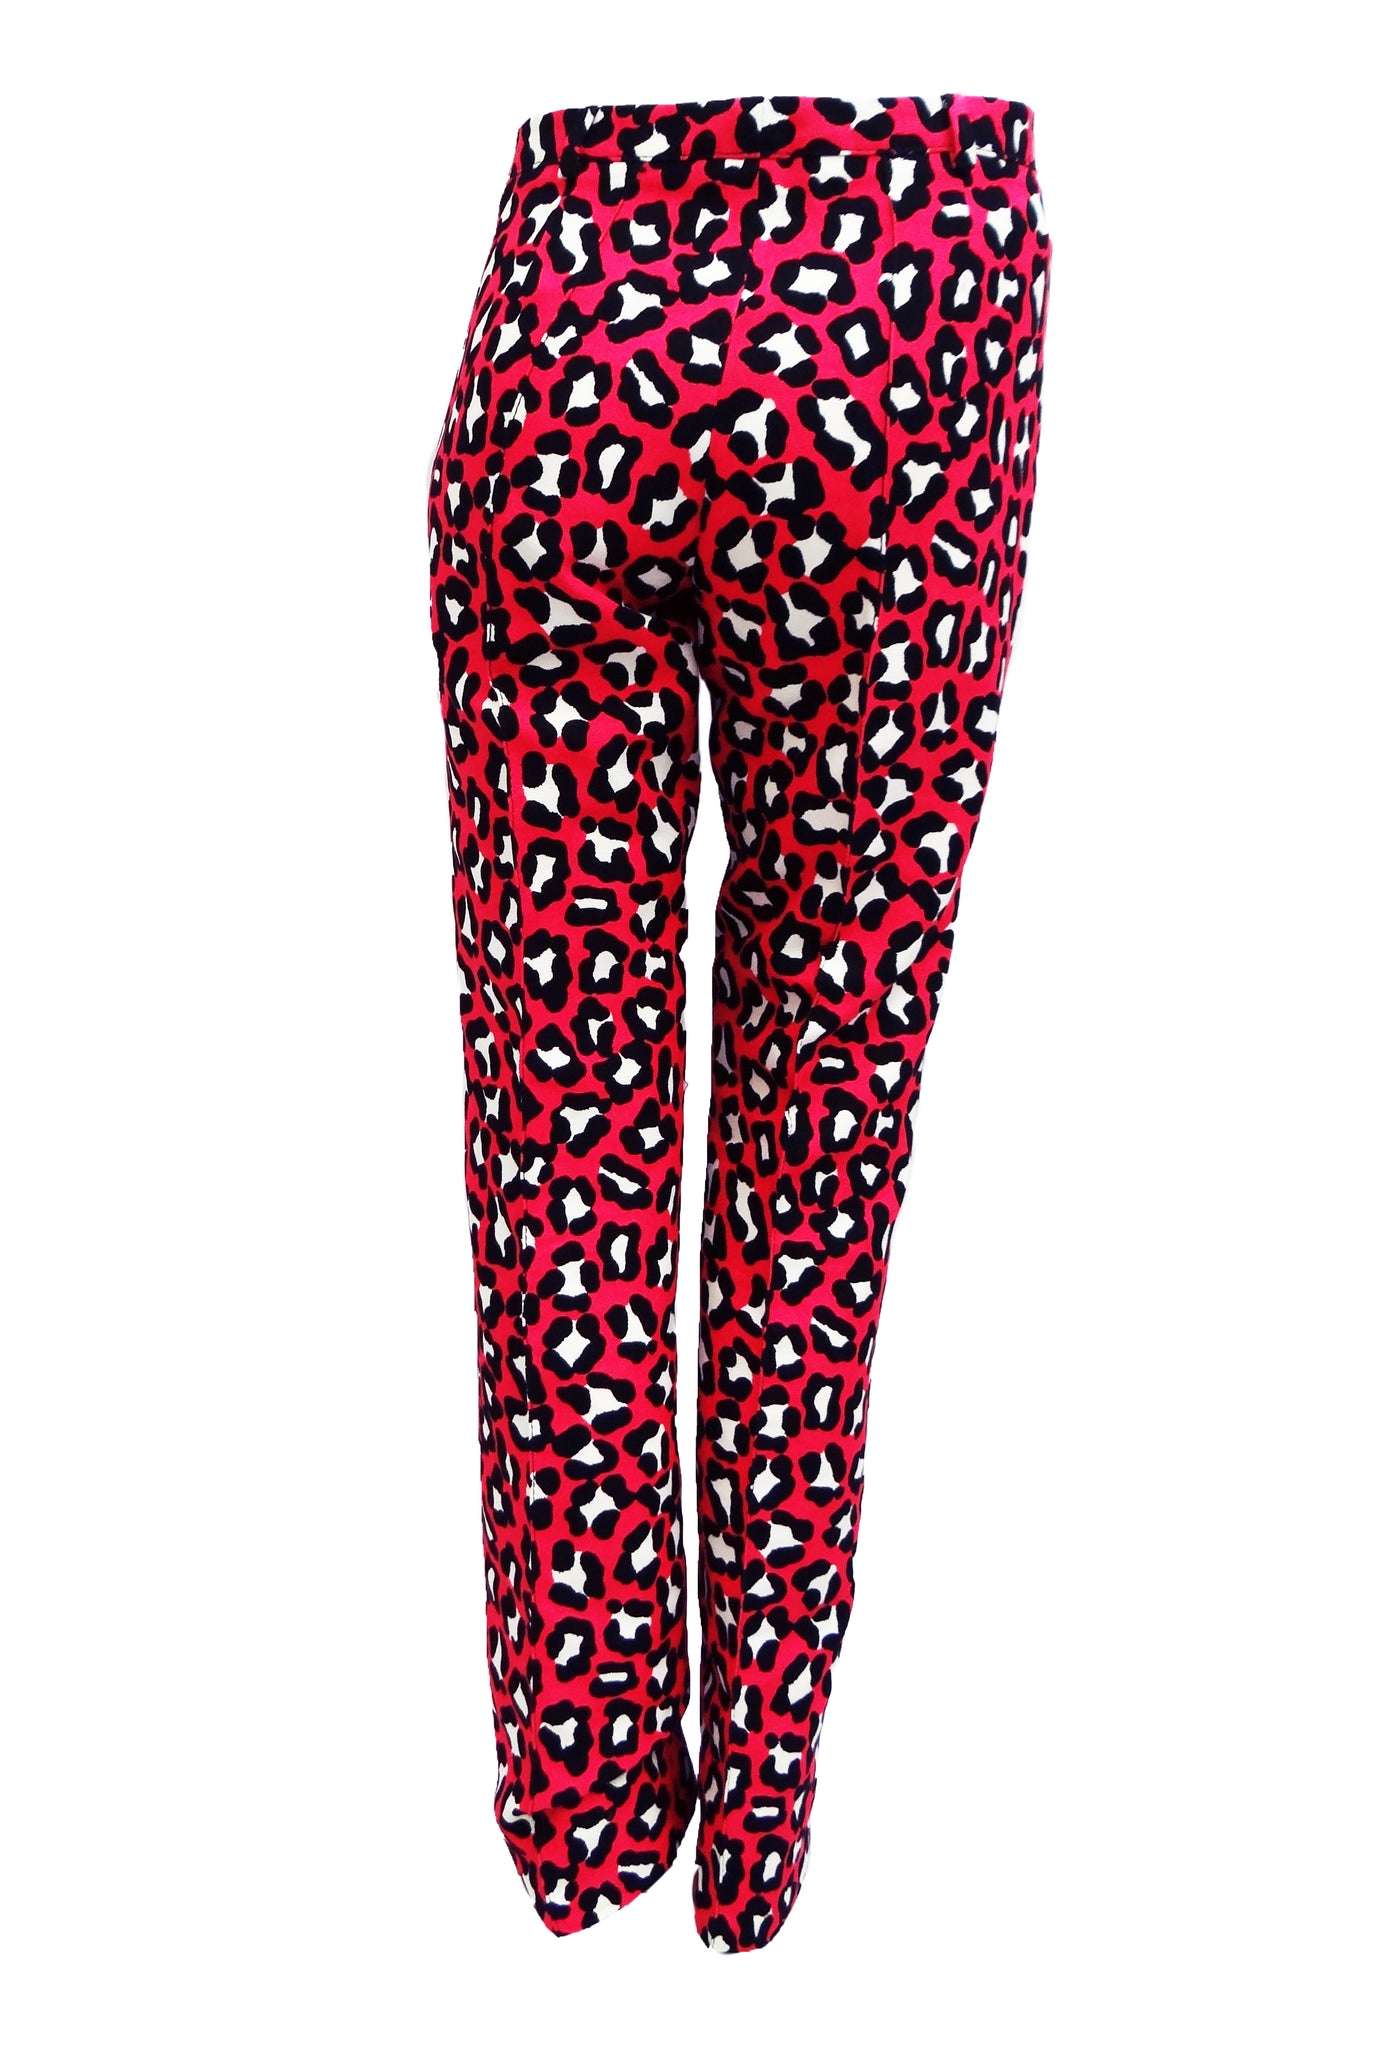 Bottega Veneta Leopard Print Trouser Suit in Hot Pink, UK10-12 – Menage ...